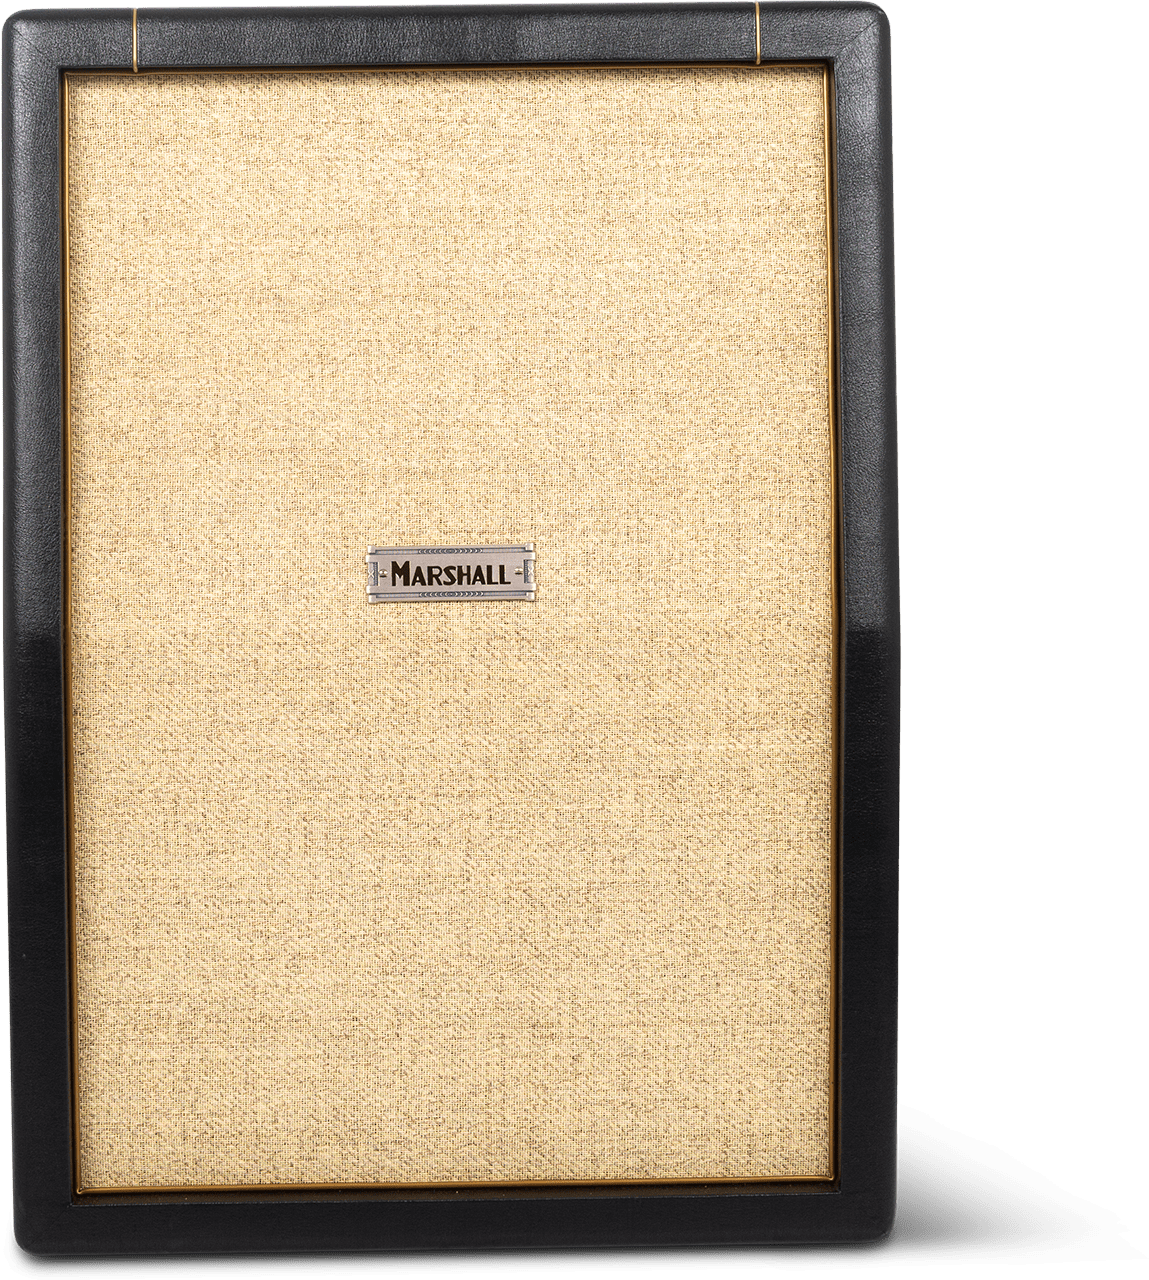 Marshall St212 Studio Cab 130w 2x12 - Boxen für E-Gitarre Verstärker - Main picture